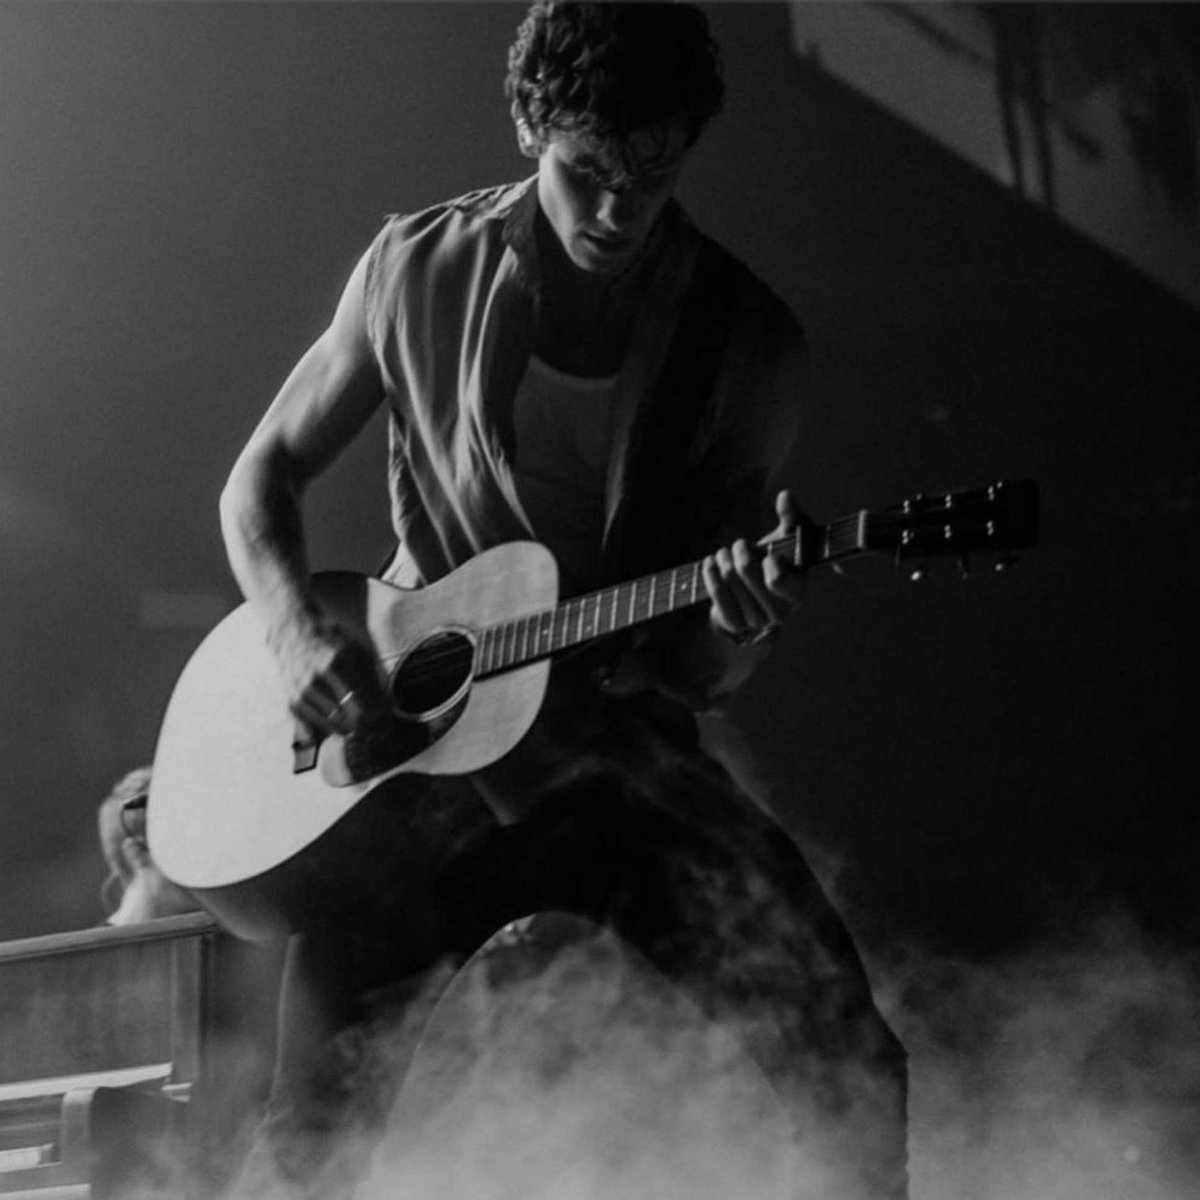 Shawn Mendes The Tour - Boston ✦